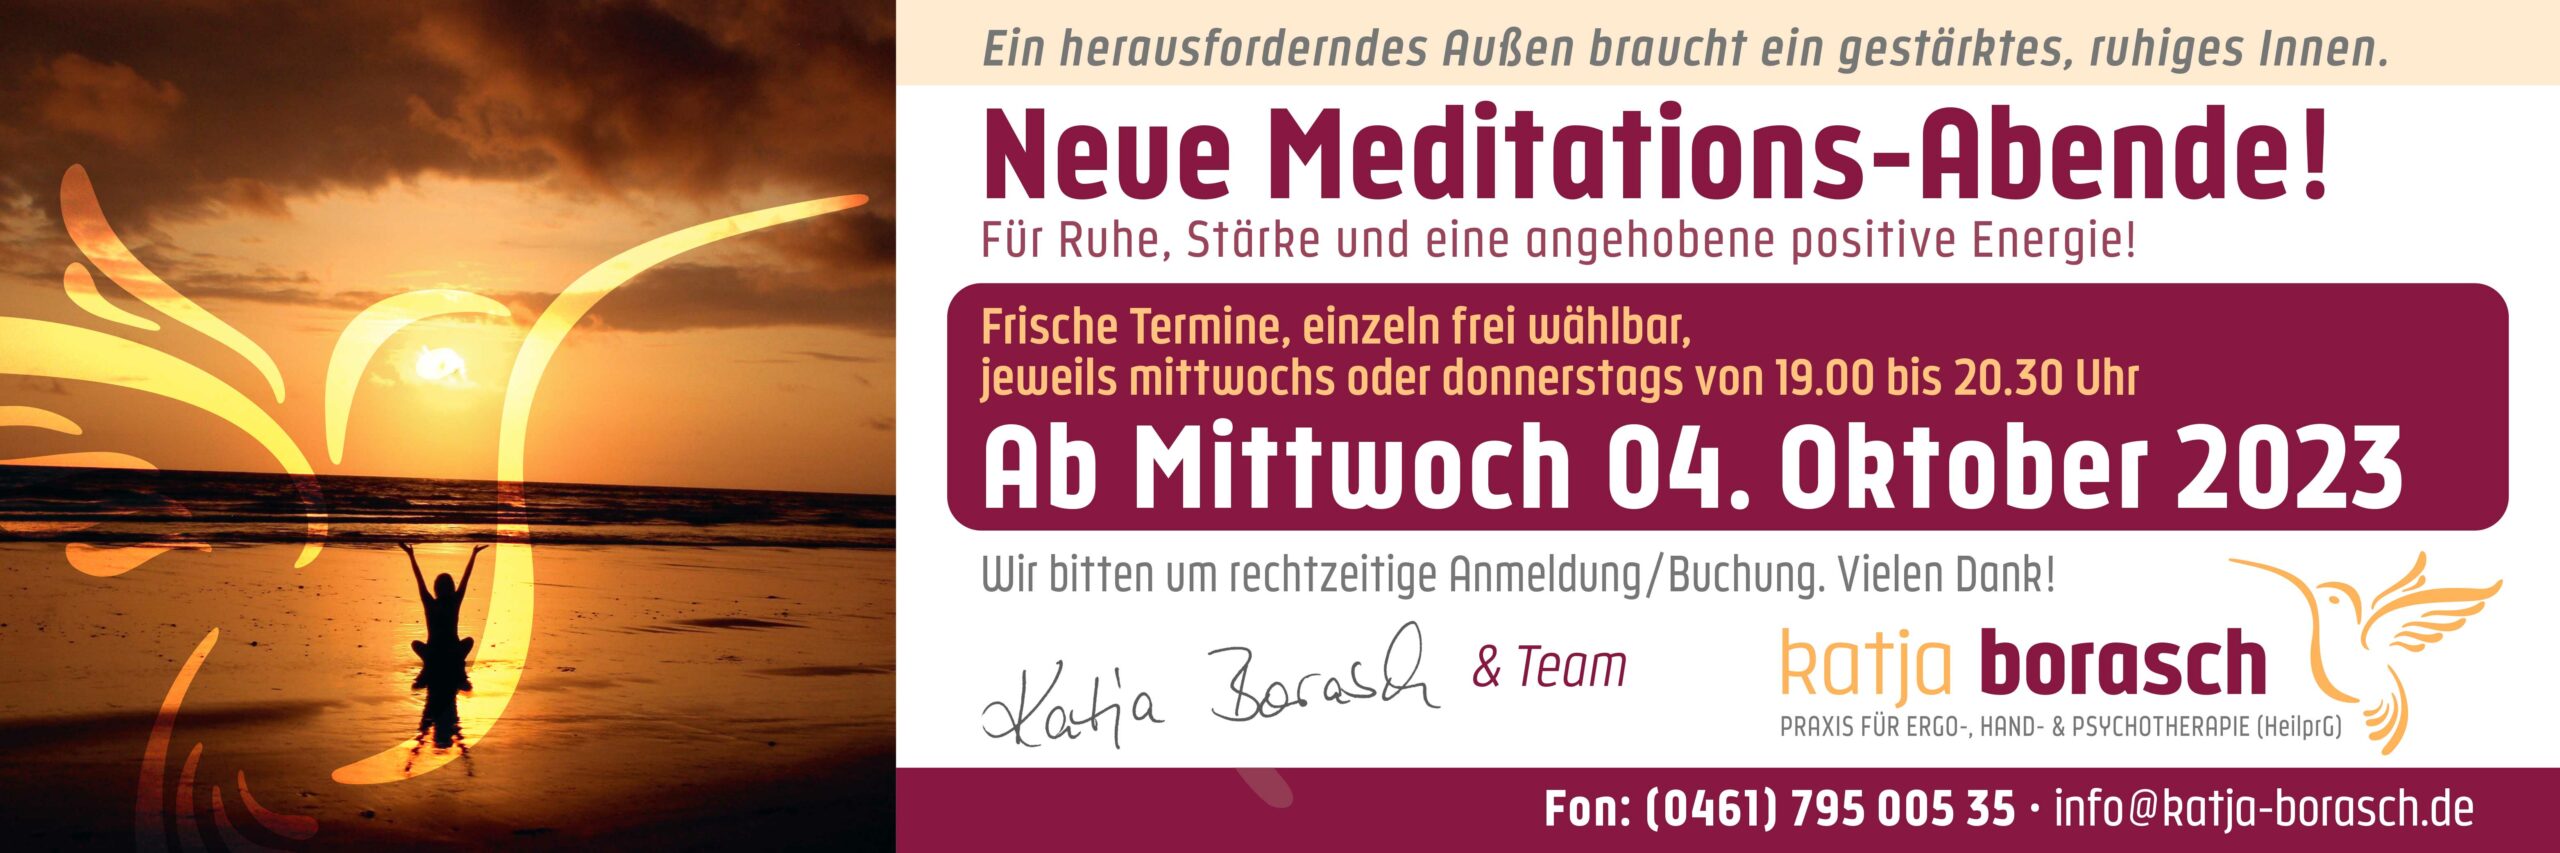 KB_Meditation_Herbst-2023_1500x500px